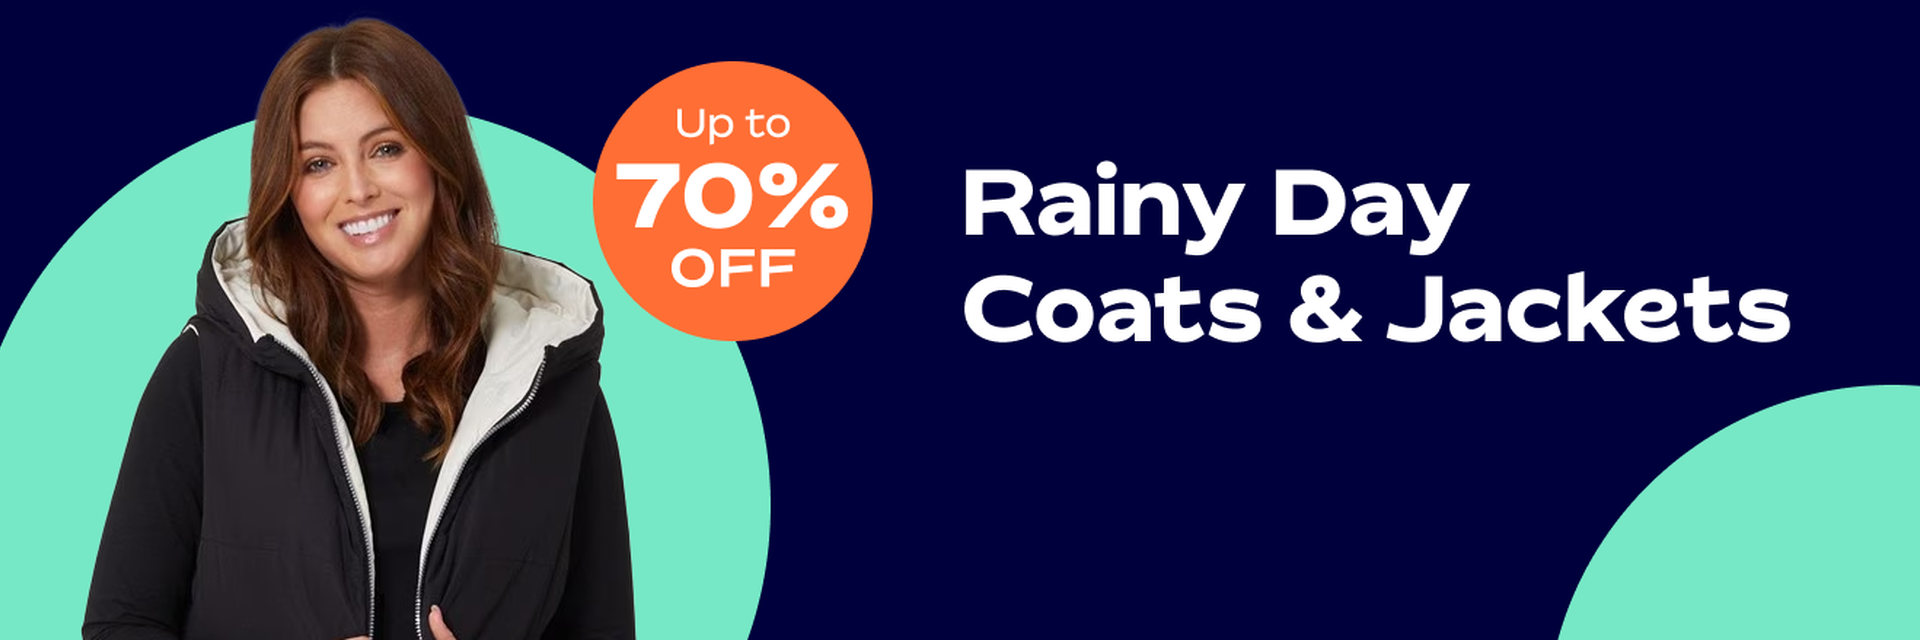 Rainy day coats & jackets